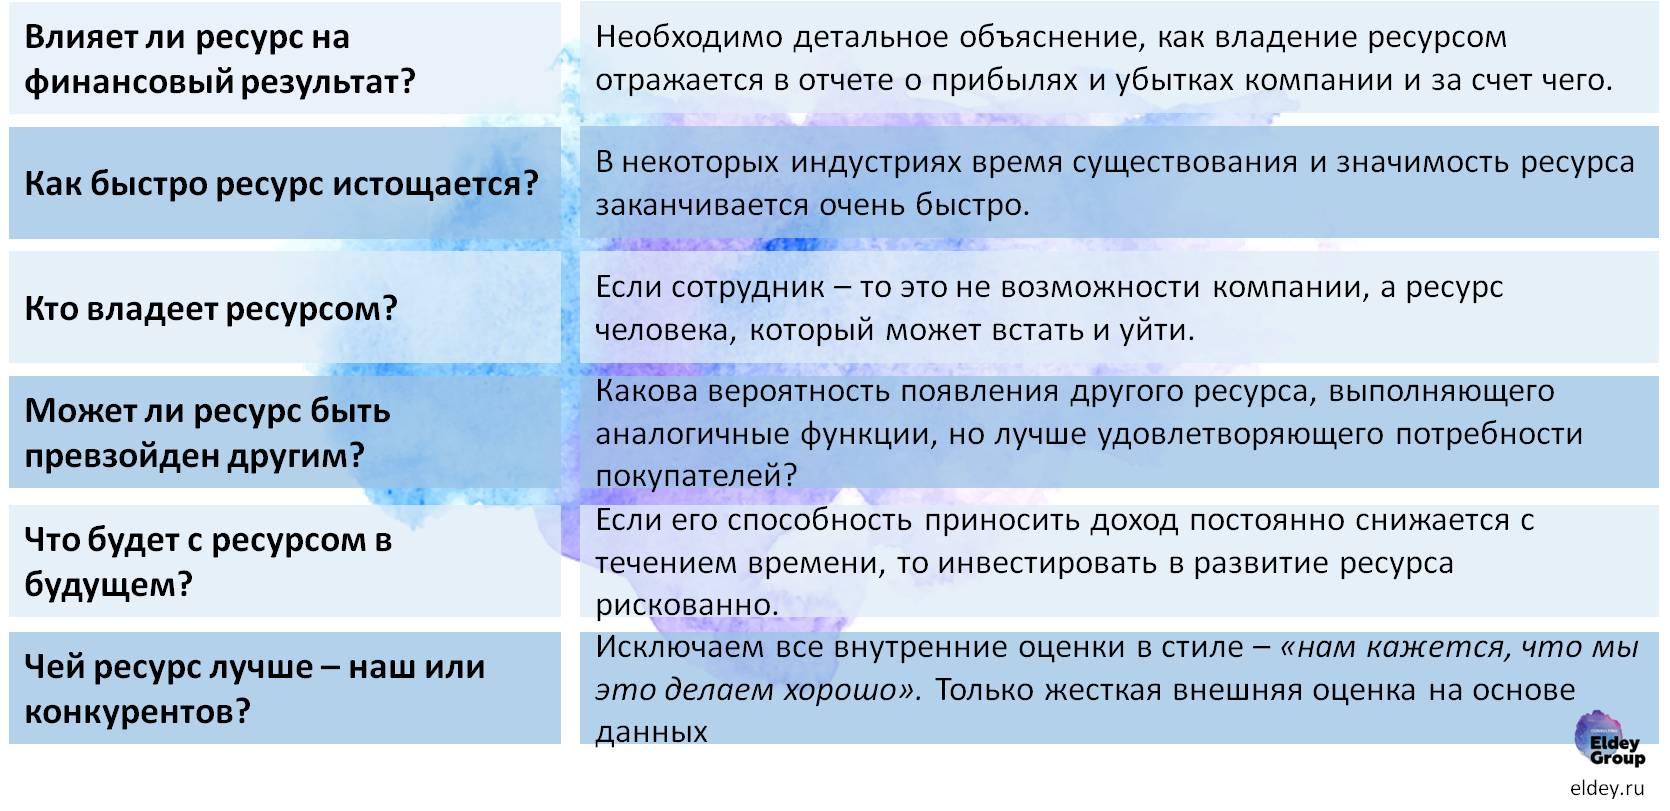 Источники конкурентного преимущества - проверка ресурсов на ценность. eldey.ru